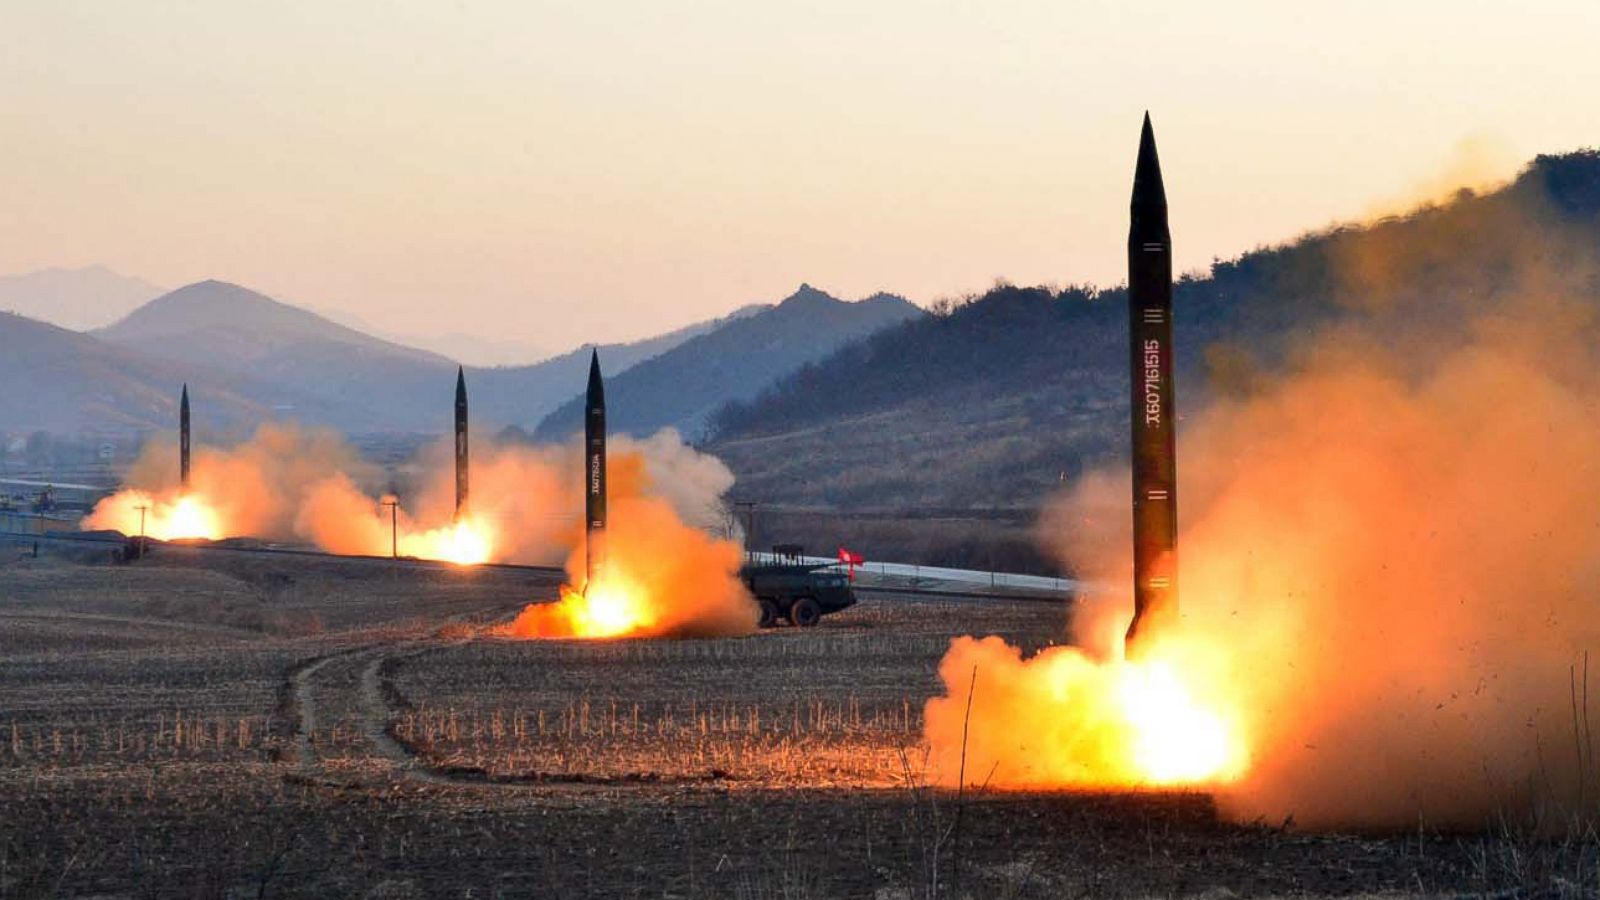 Β.Κορέα: «Ανόητες προσπάθειες της Δύσης για να δικαιολογήσουν την αποστολή αρμάτων»